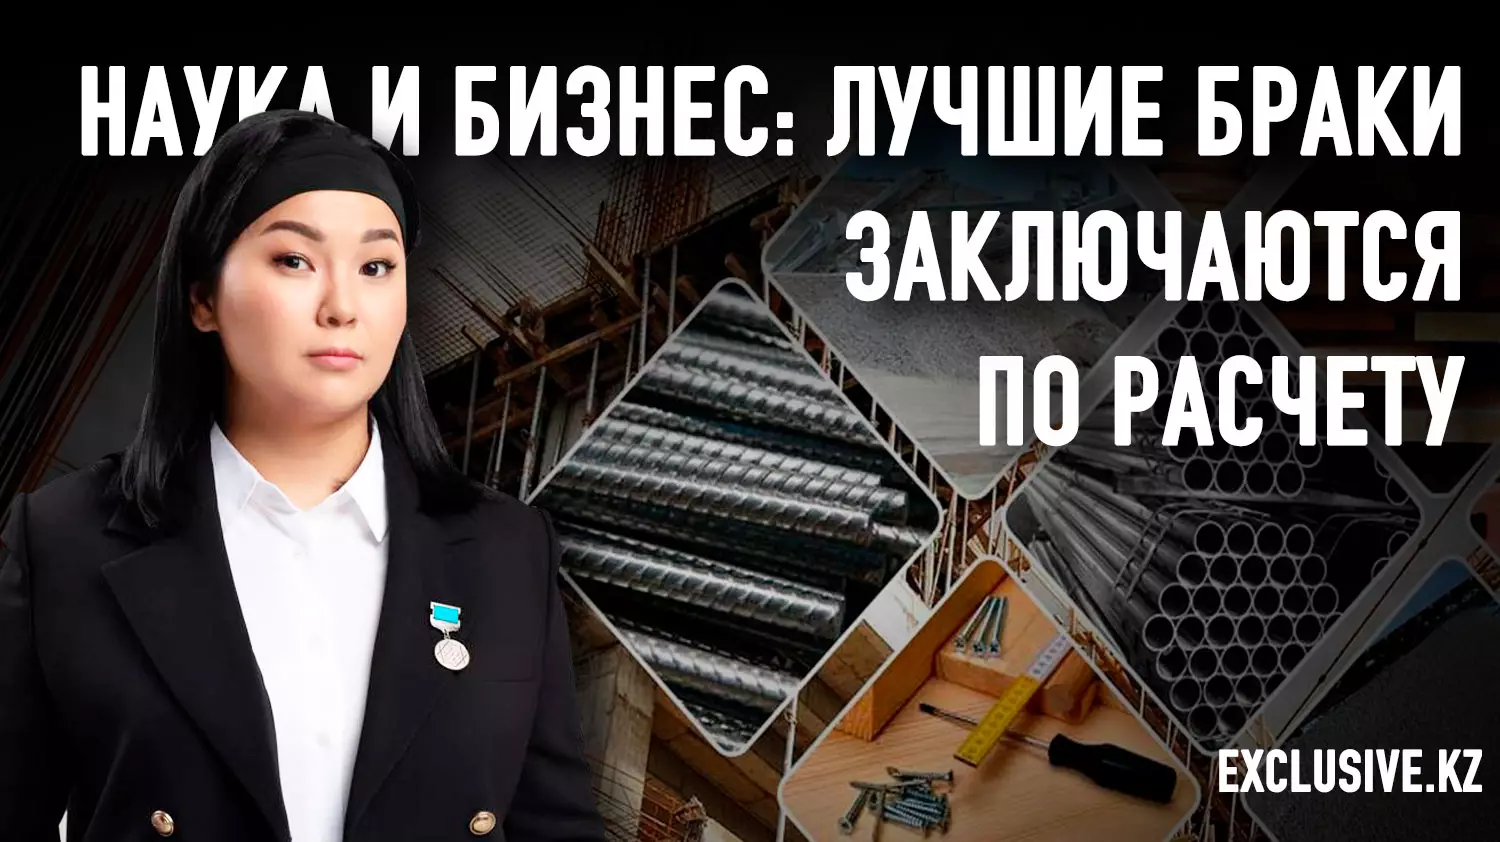 Наука в Казахстане есть, и она коммерциализируется, если работает на бизнес